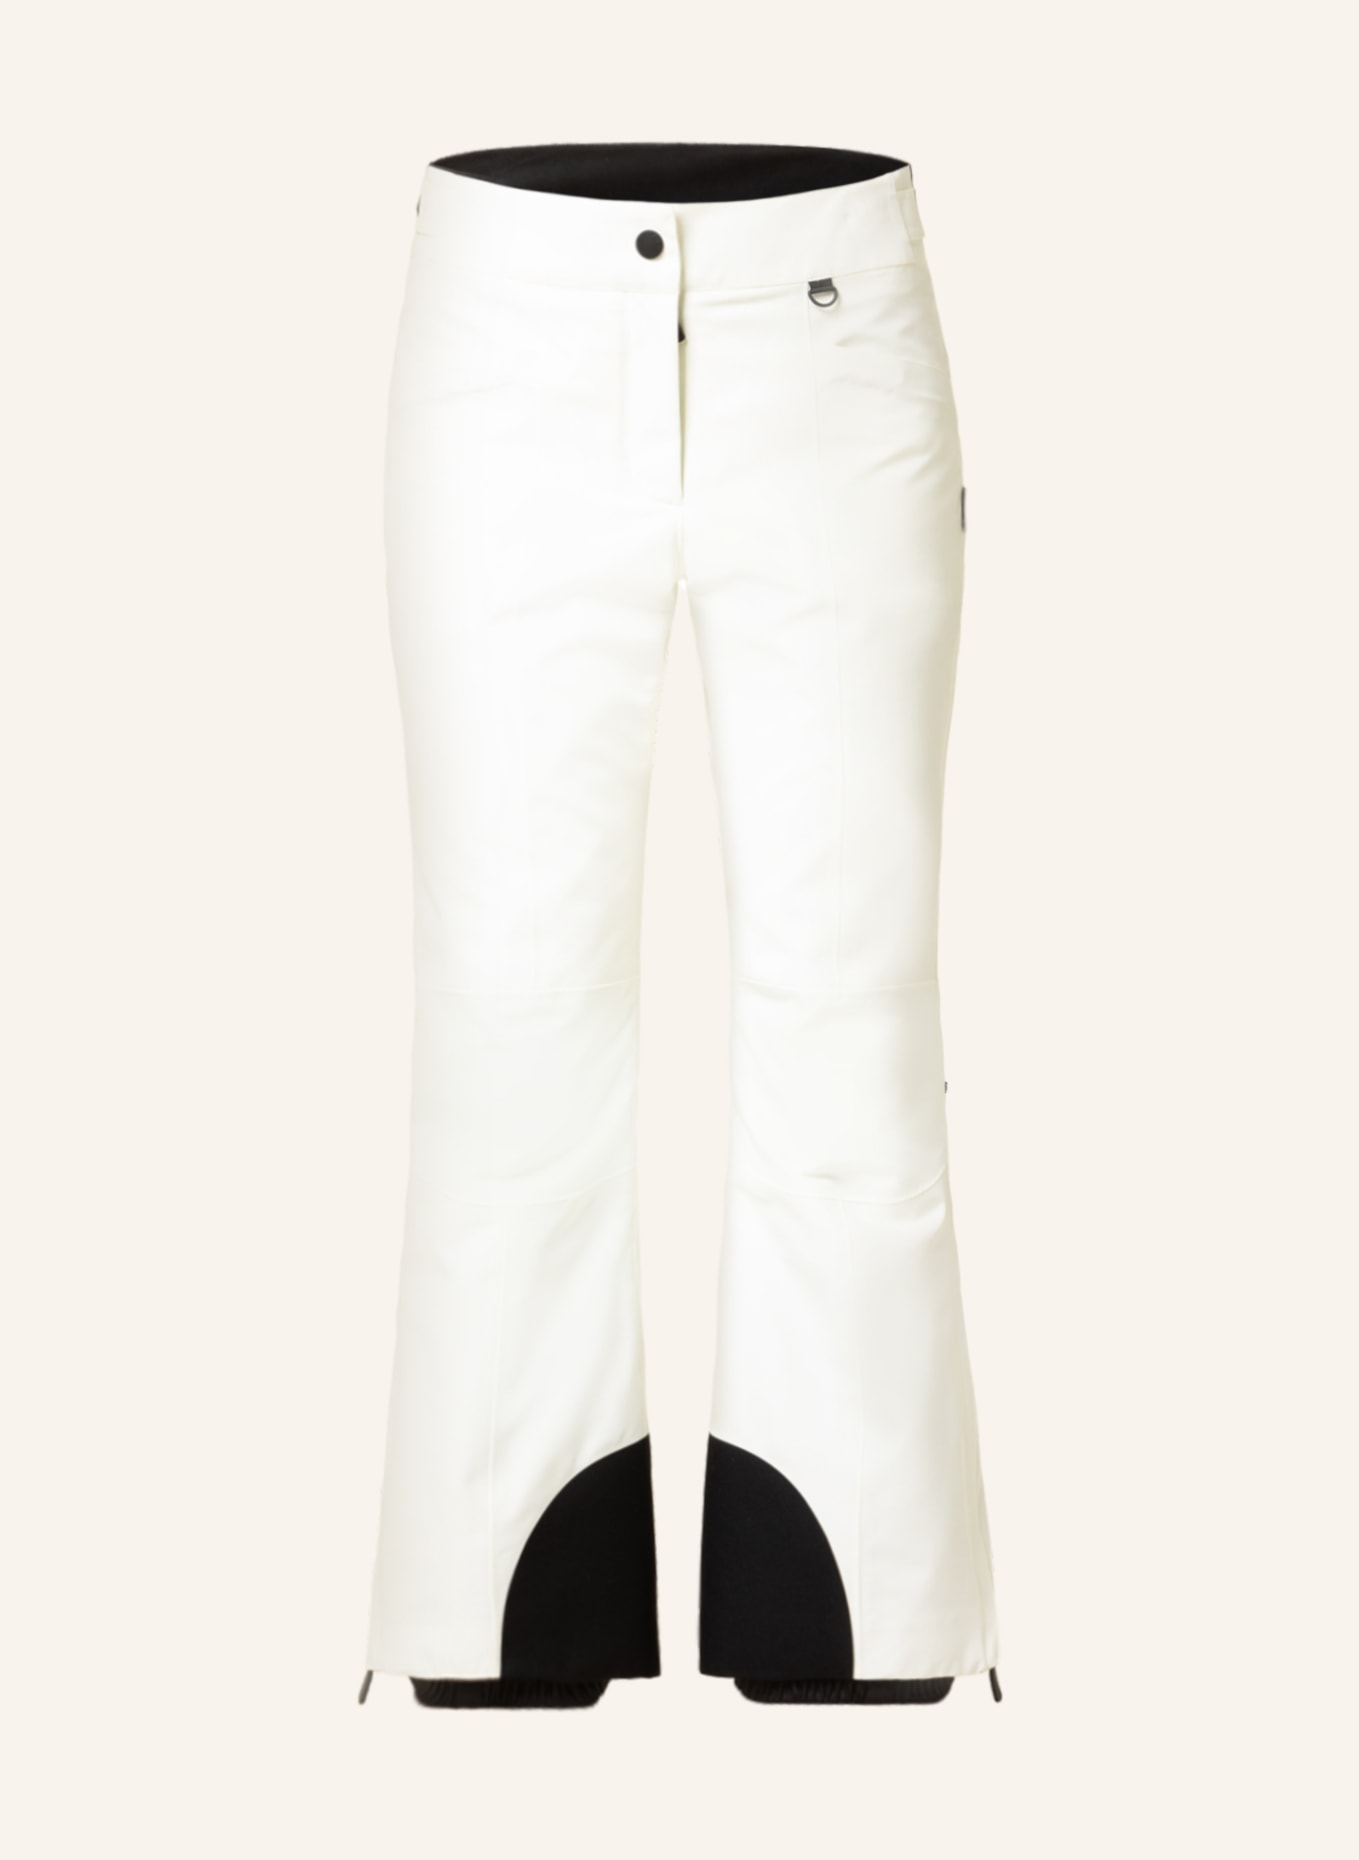 MONCLER GRENOBLE Ski pants in cream/ black